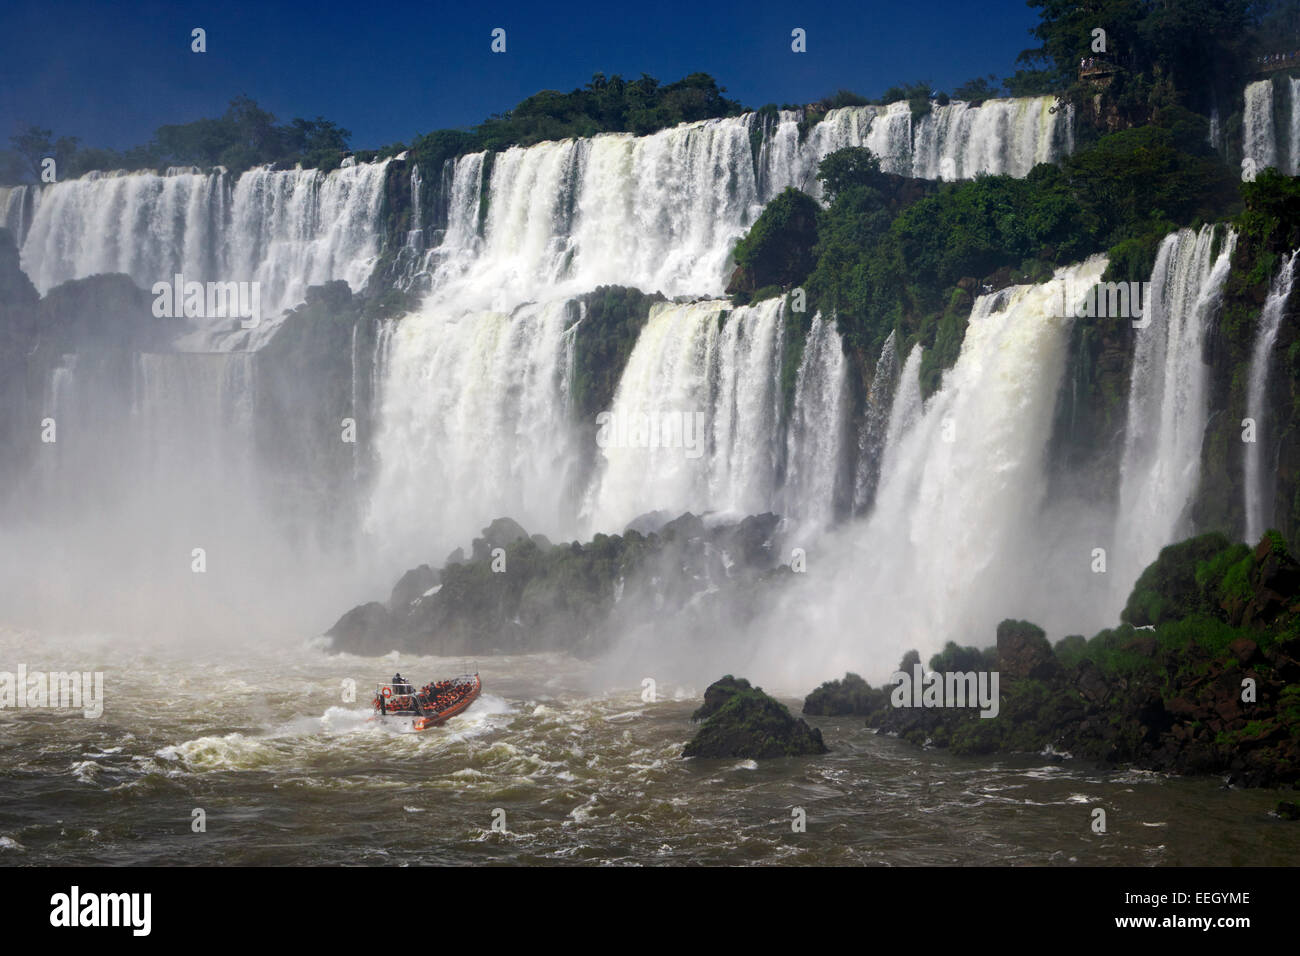 boat approaching falls in iguazu falls iguazu national park, republic of argentina, south america Stock Photo